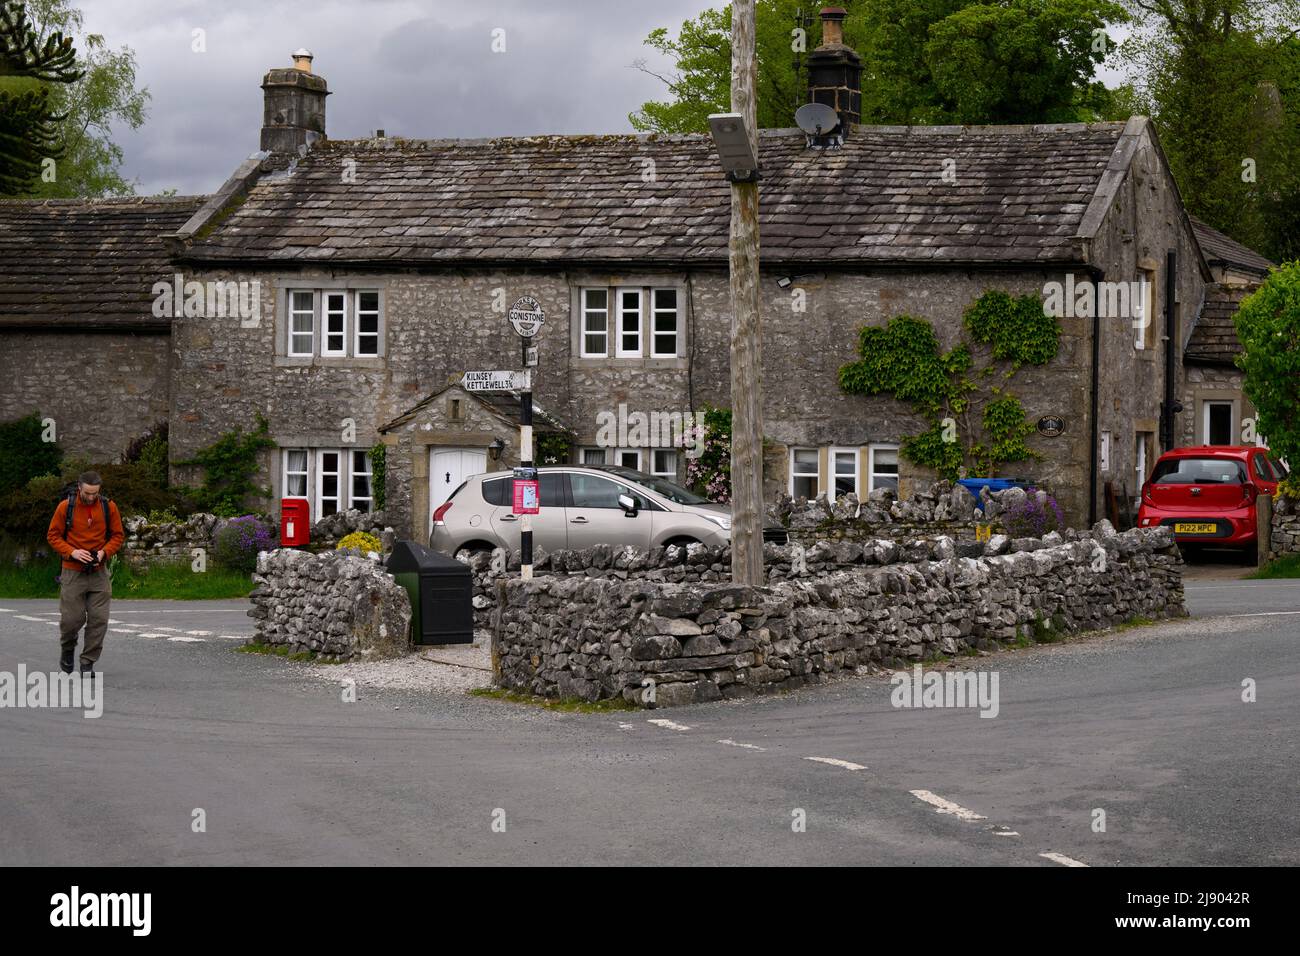 Conistone village centre (belles propriétés en pierre, jonction de route, personne à pied, signalisation) - Wharfedale, Yorkshire Dales, Angleterre, Royaume-Uni. Banque D'Images